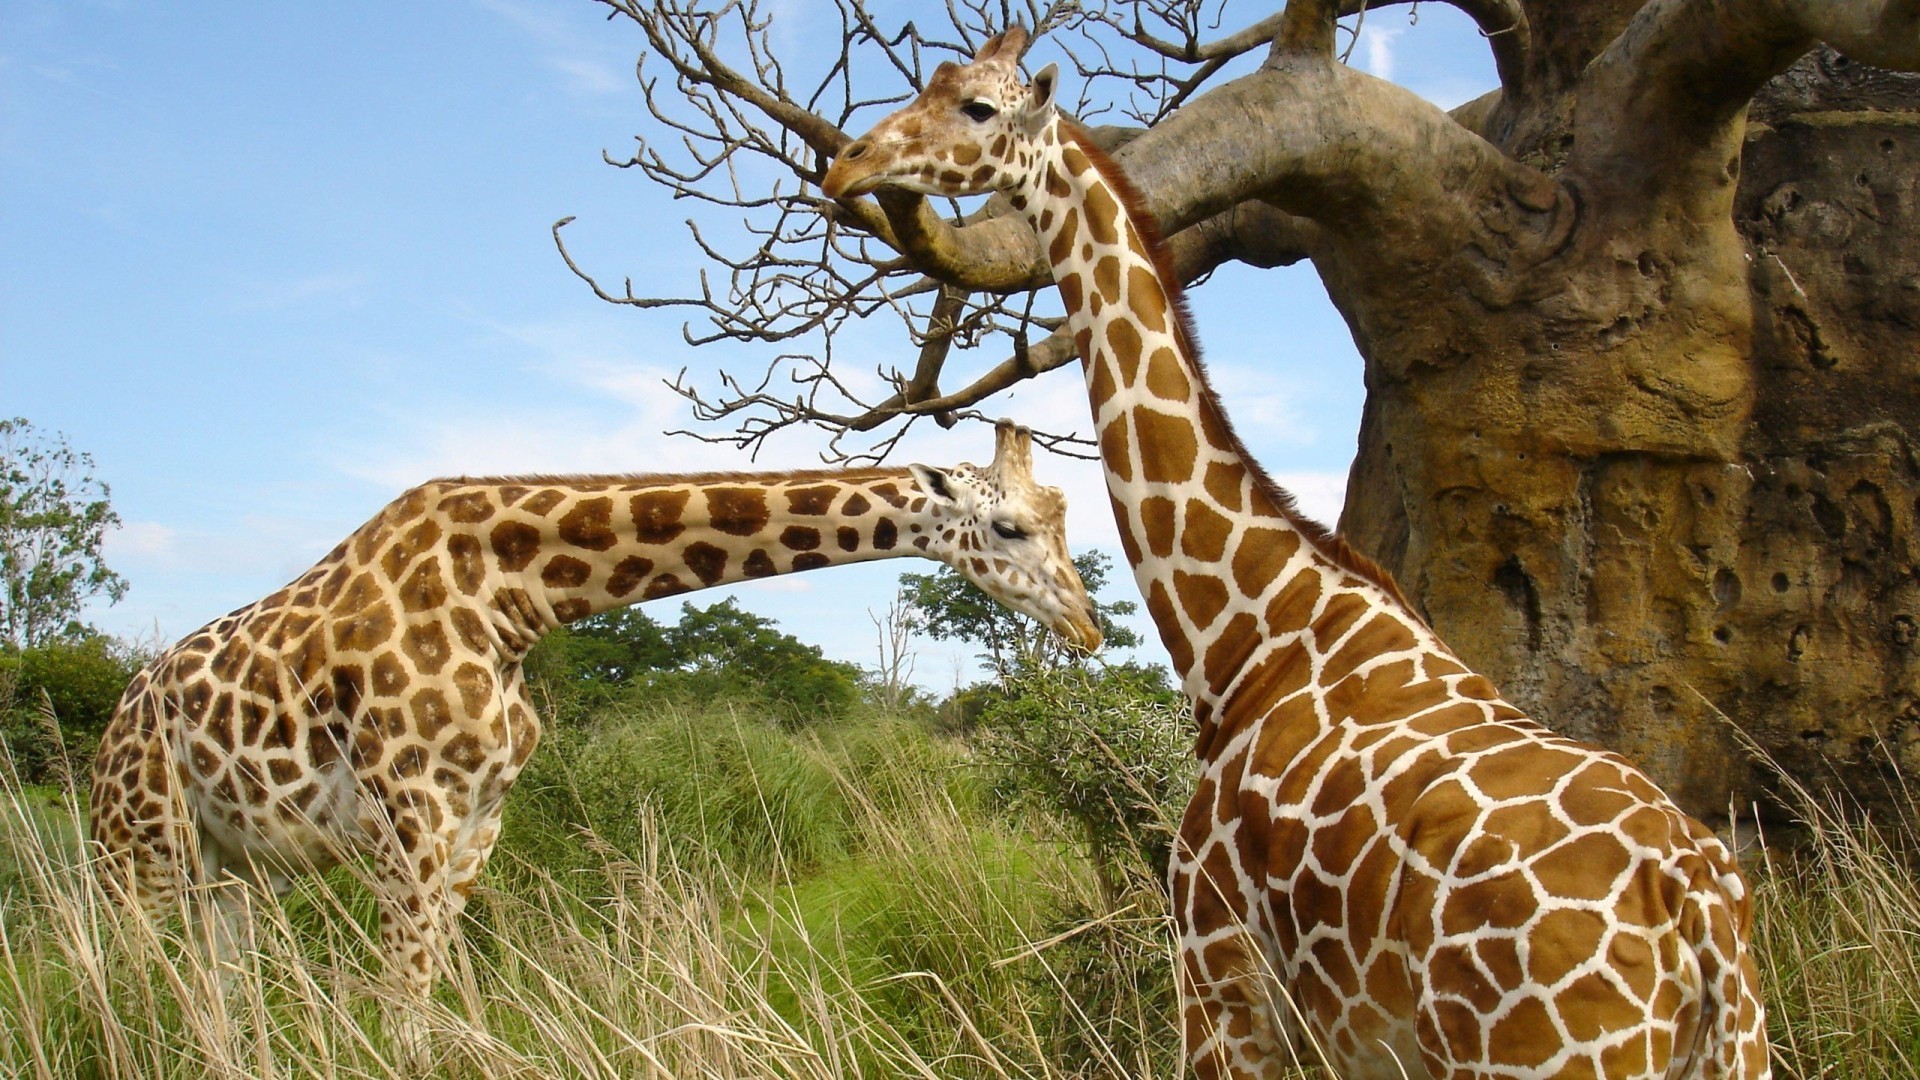 General 1920x1080 animals giraffes nature mammals Africa outdoors plants